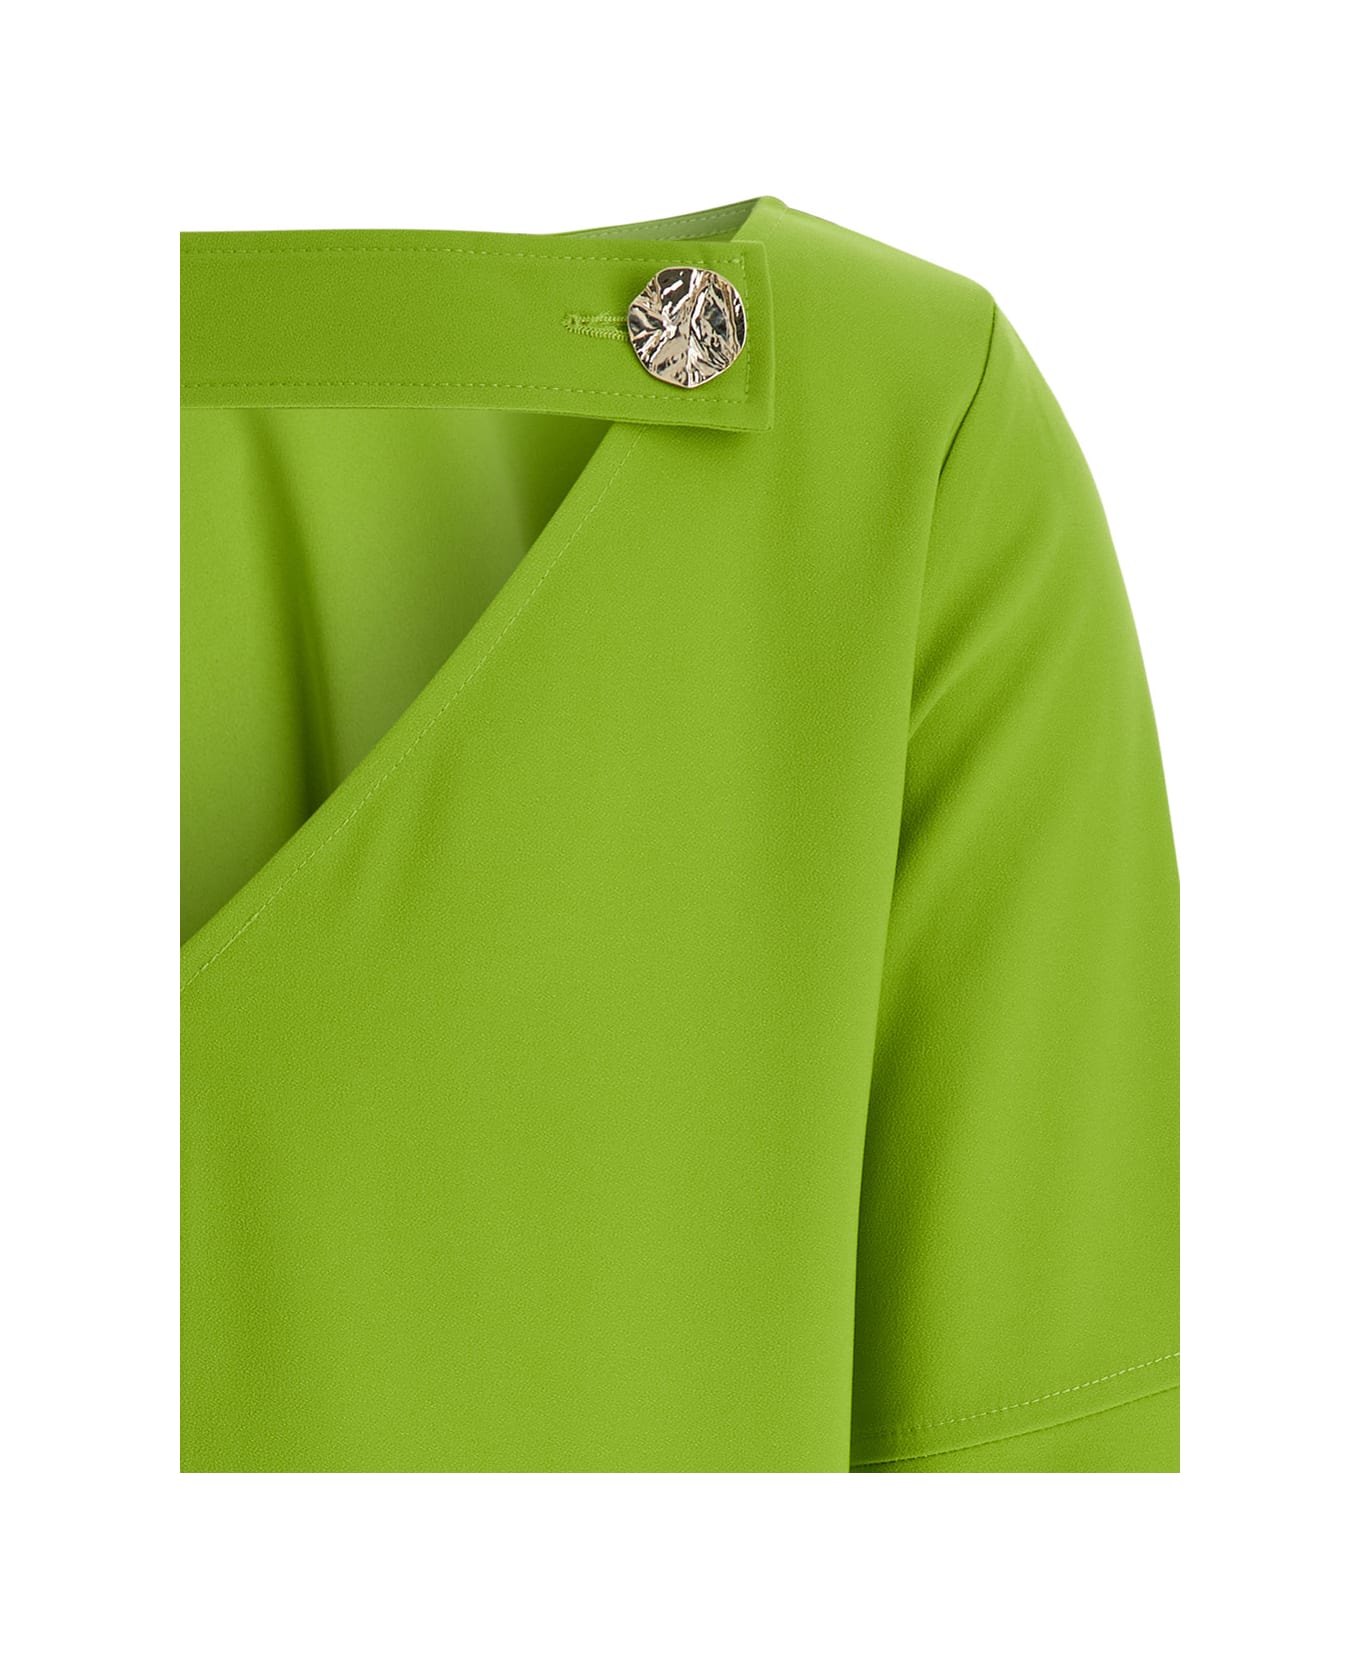 Liu-Jo Lime Green Bell-sleeve Mini Dress In Crepe Fabric Woman - Green